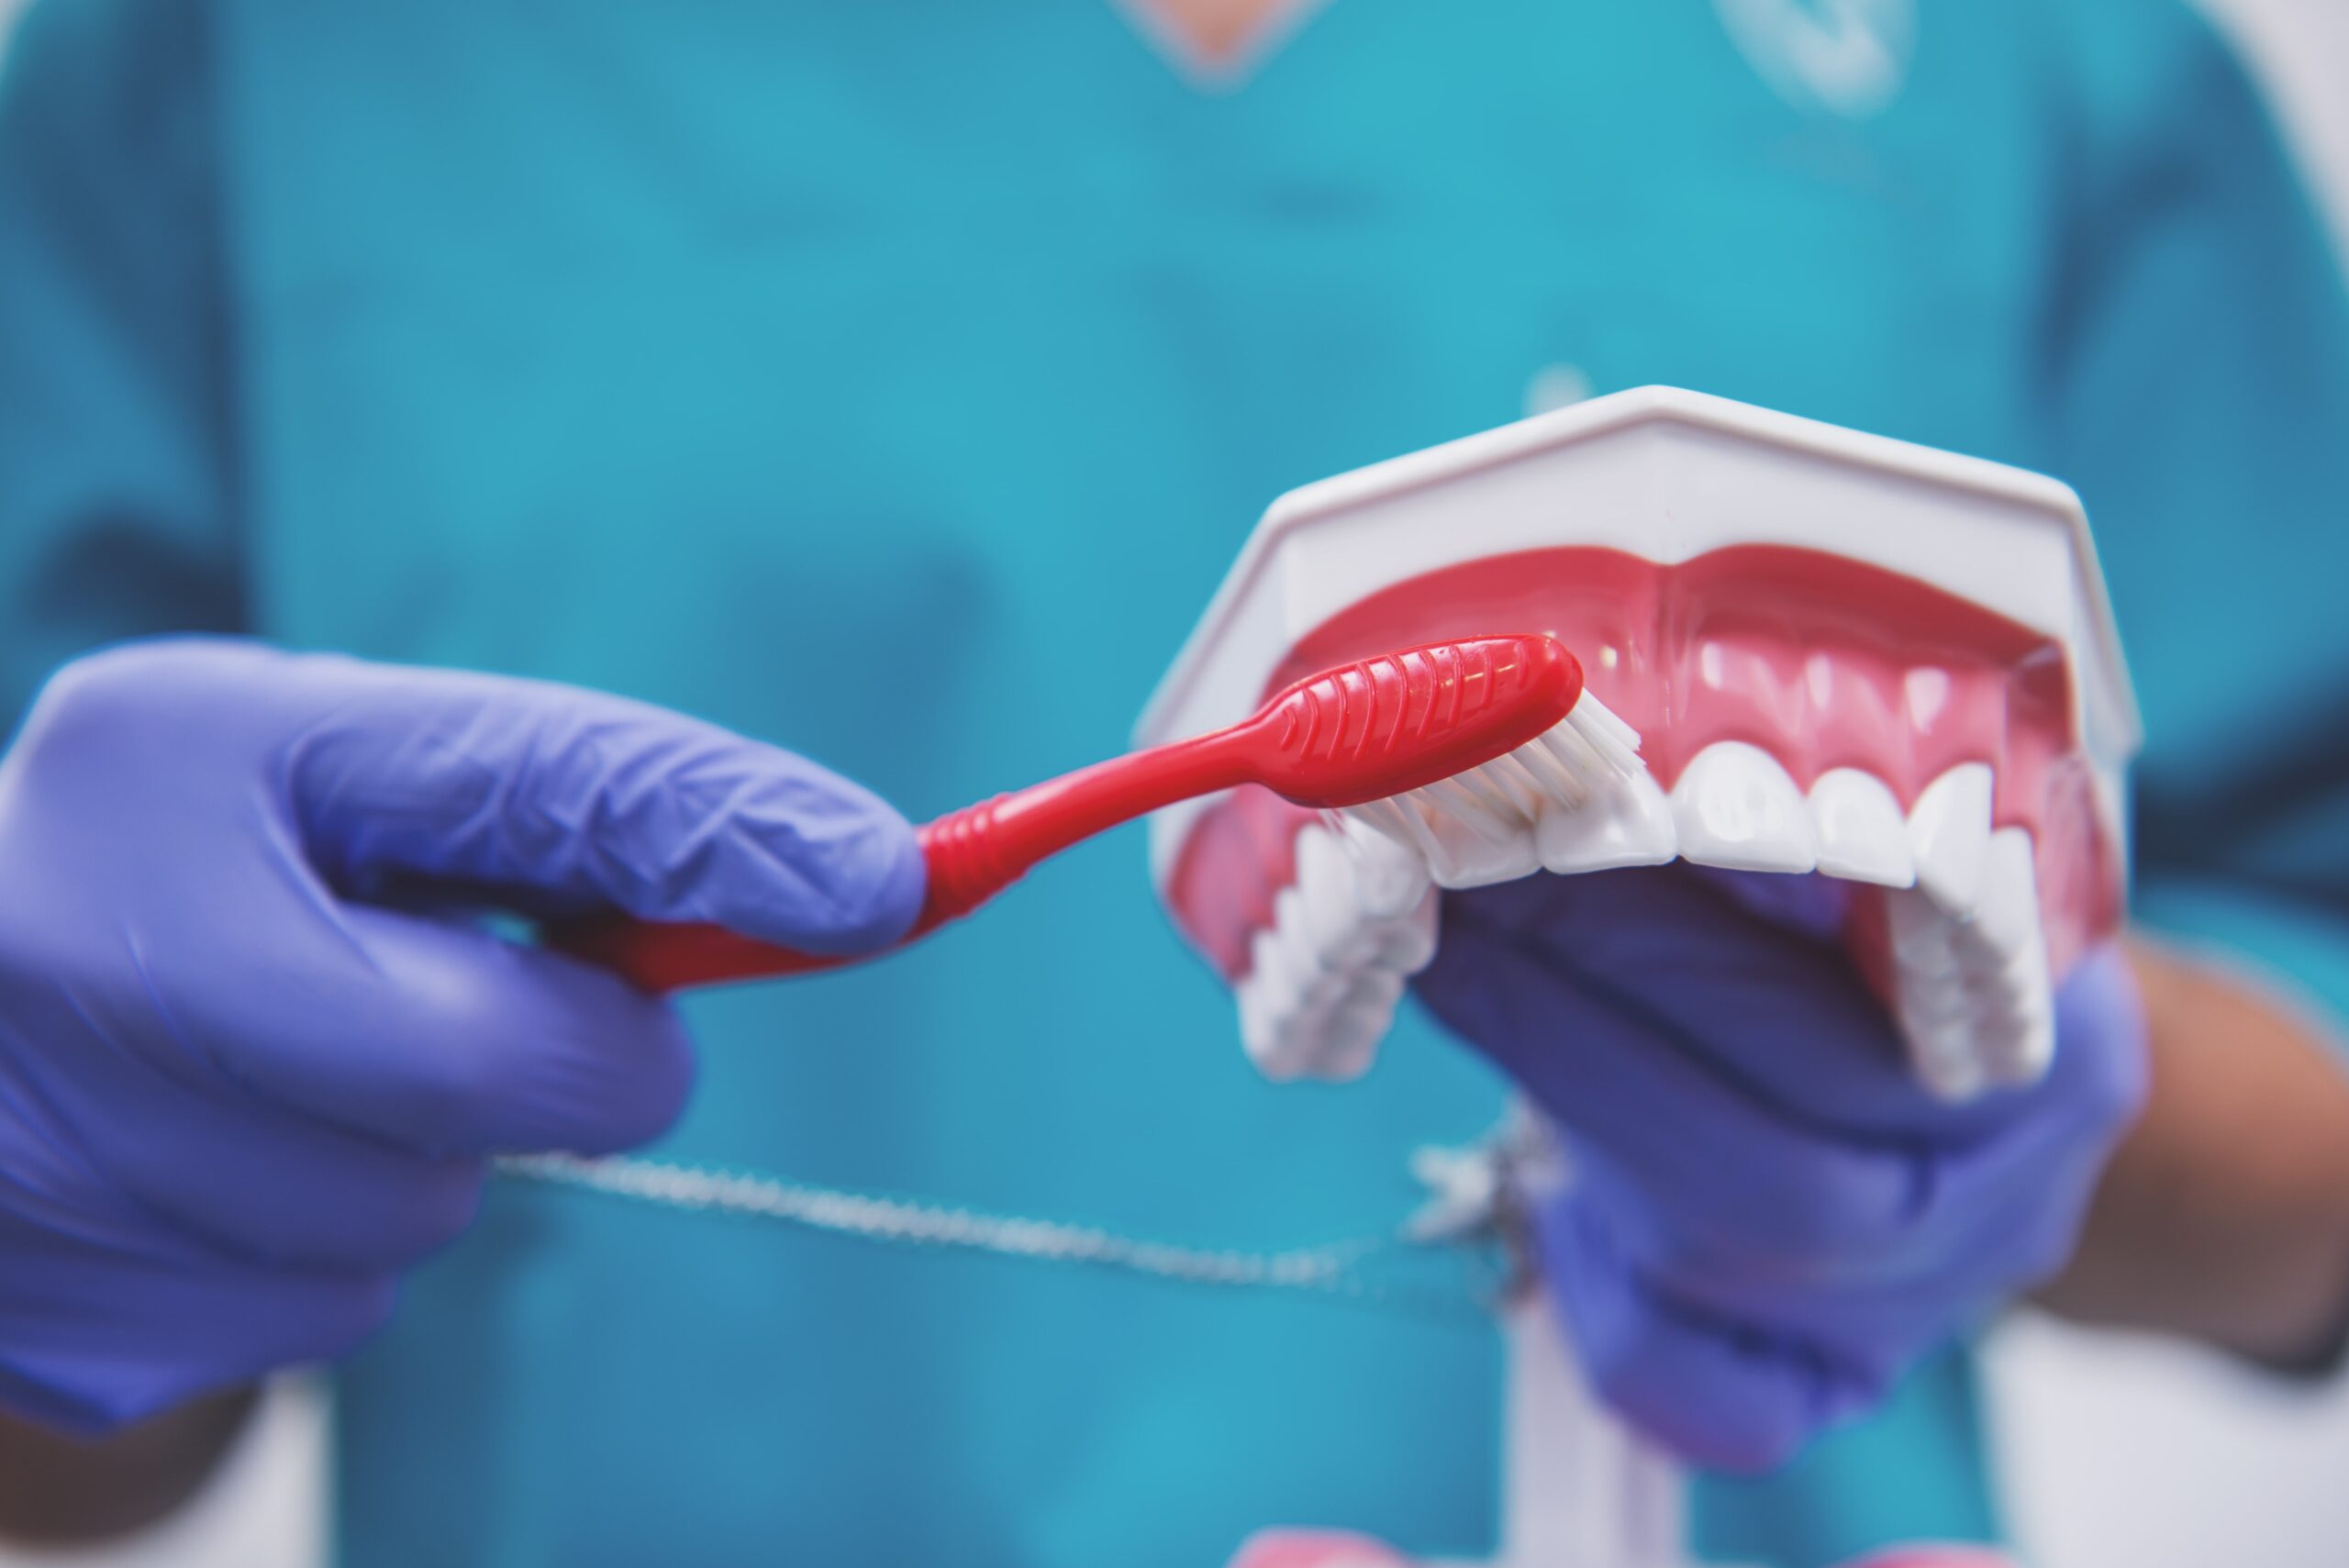 Mycie zębów - Jak prawidłowo myć zęby - demonstracja techniki szczotkowania zębów na modelu dentystycznym